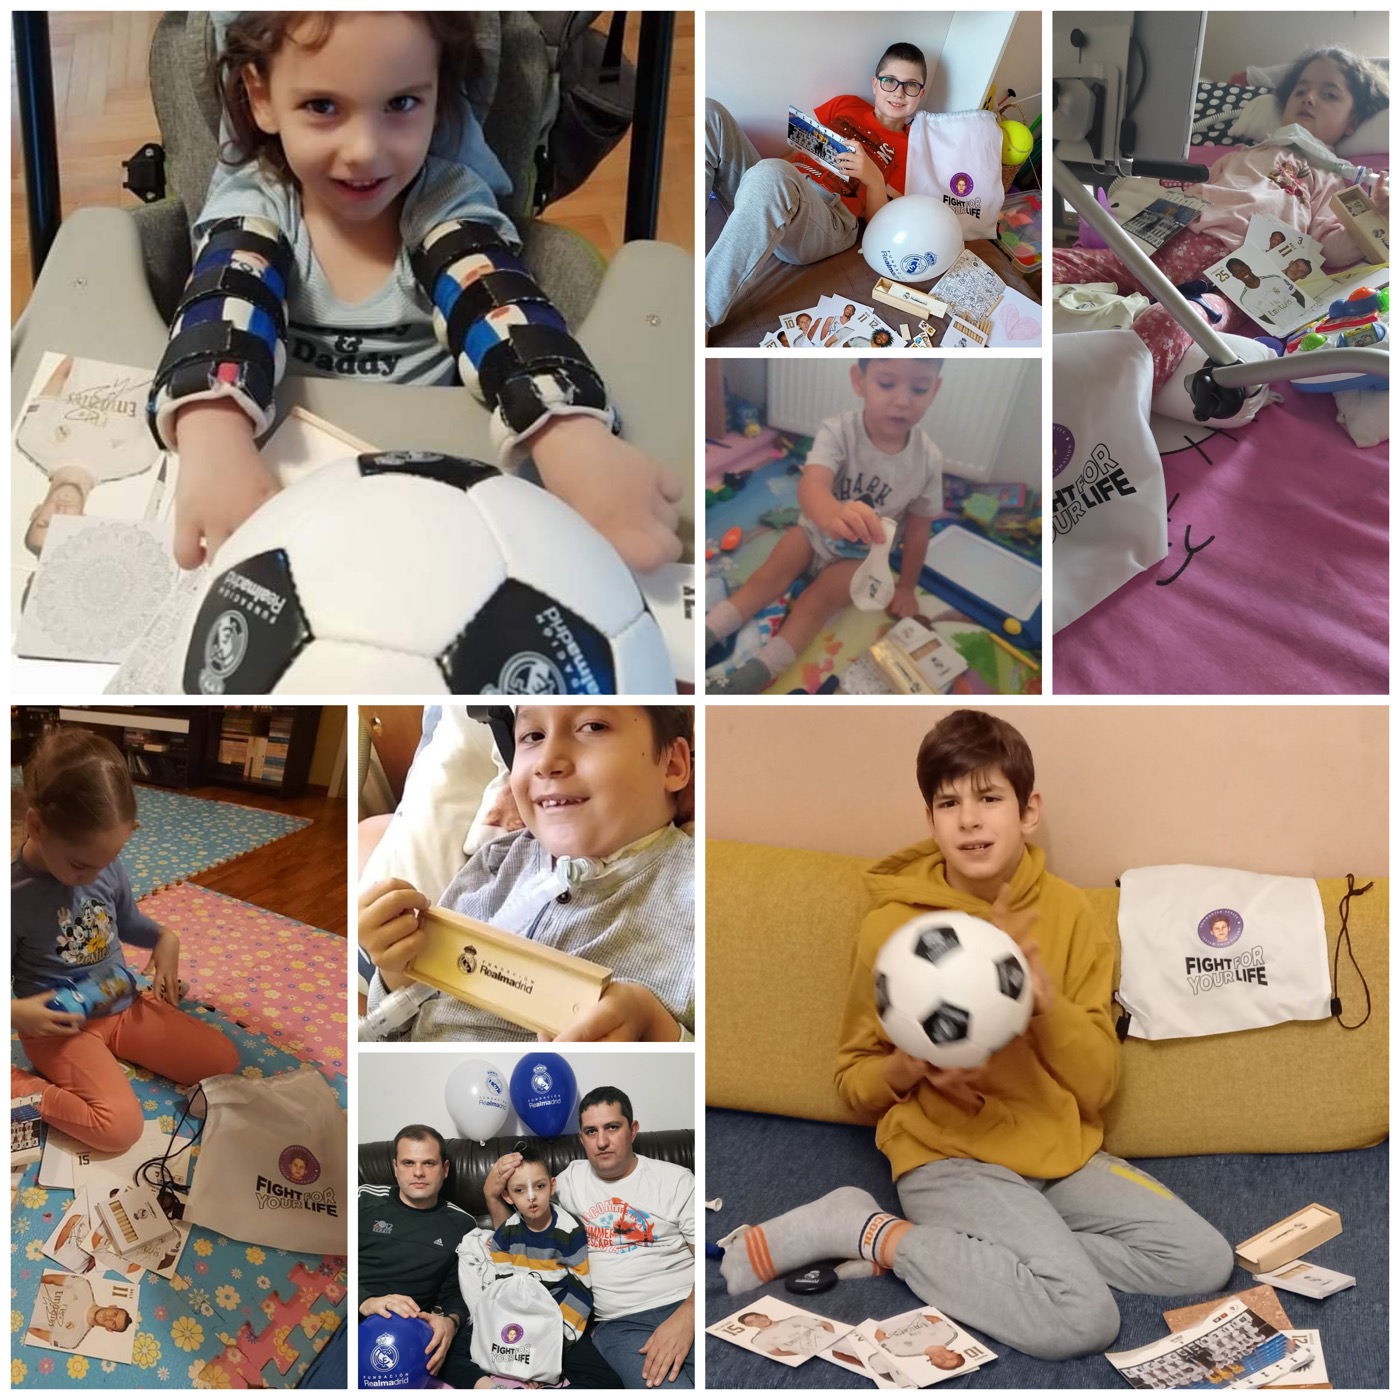 Fondacija Isaija i Fondacija Real Madrid poslali poklone deci sa retkim bolestima širom Srbije